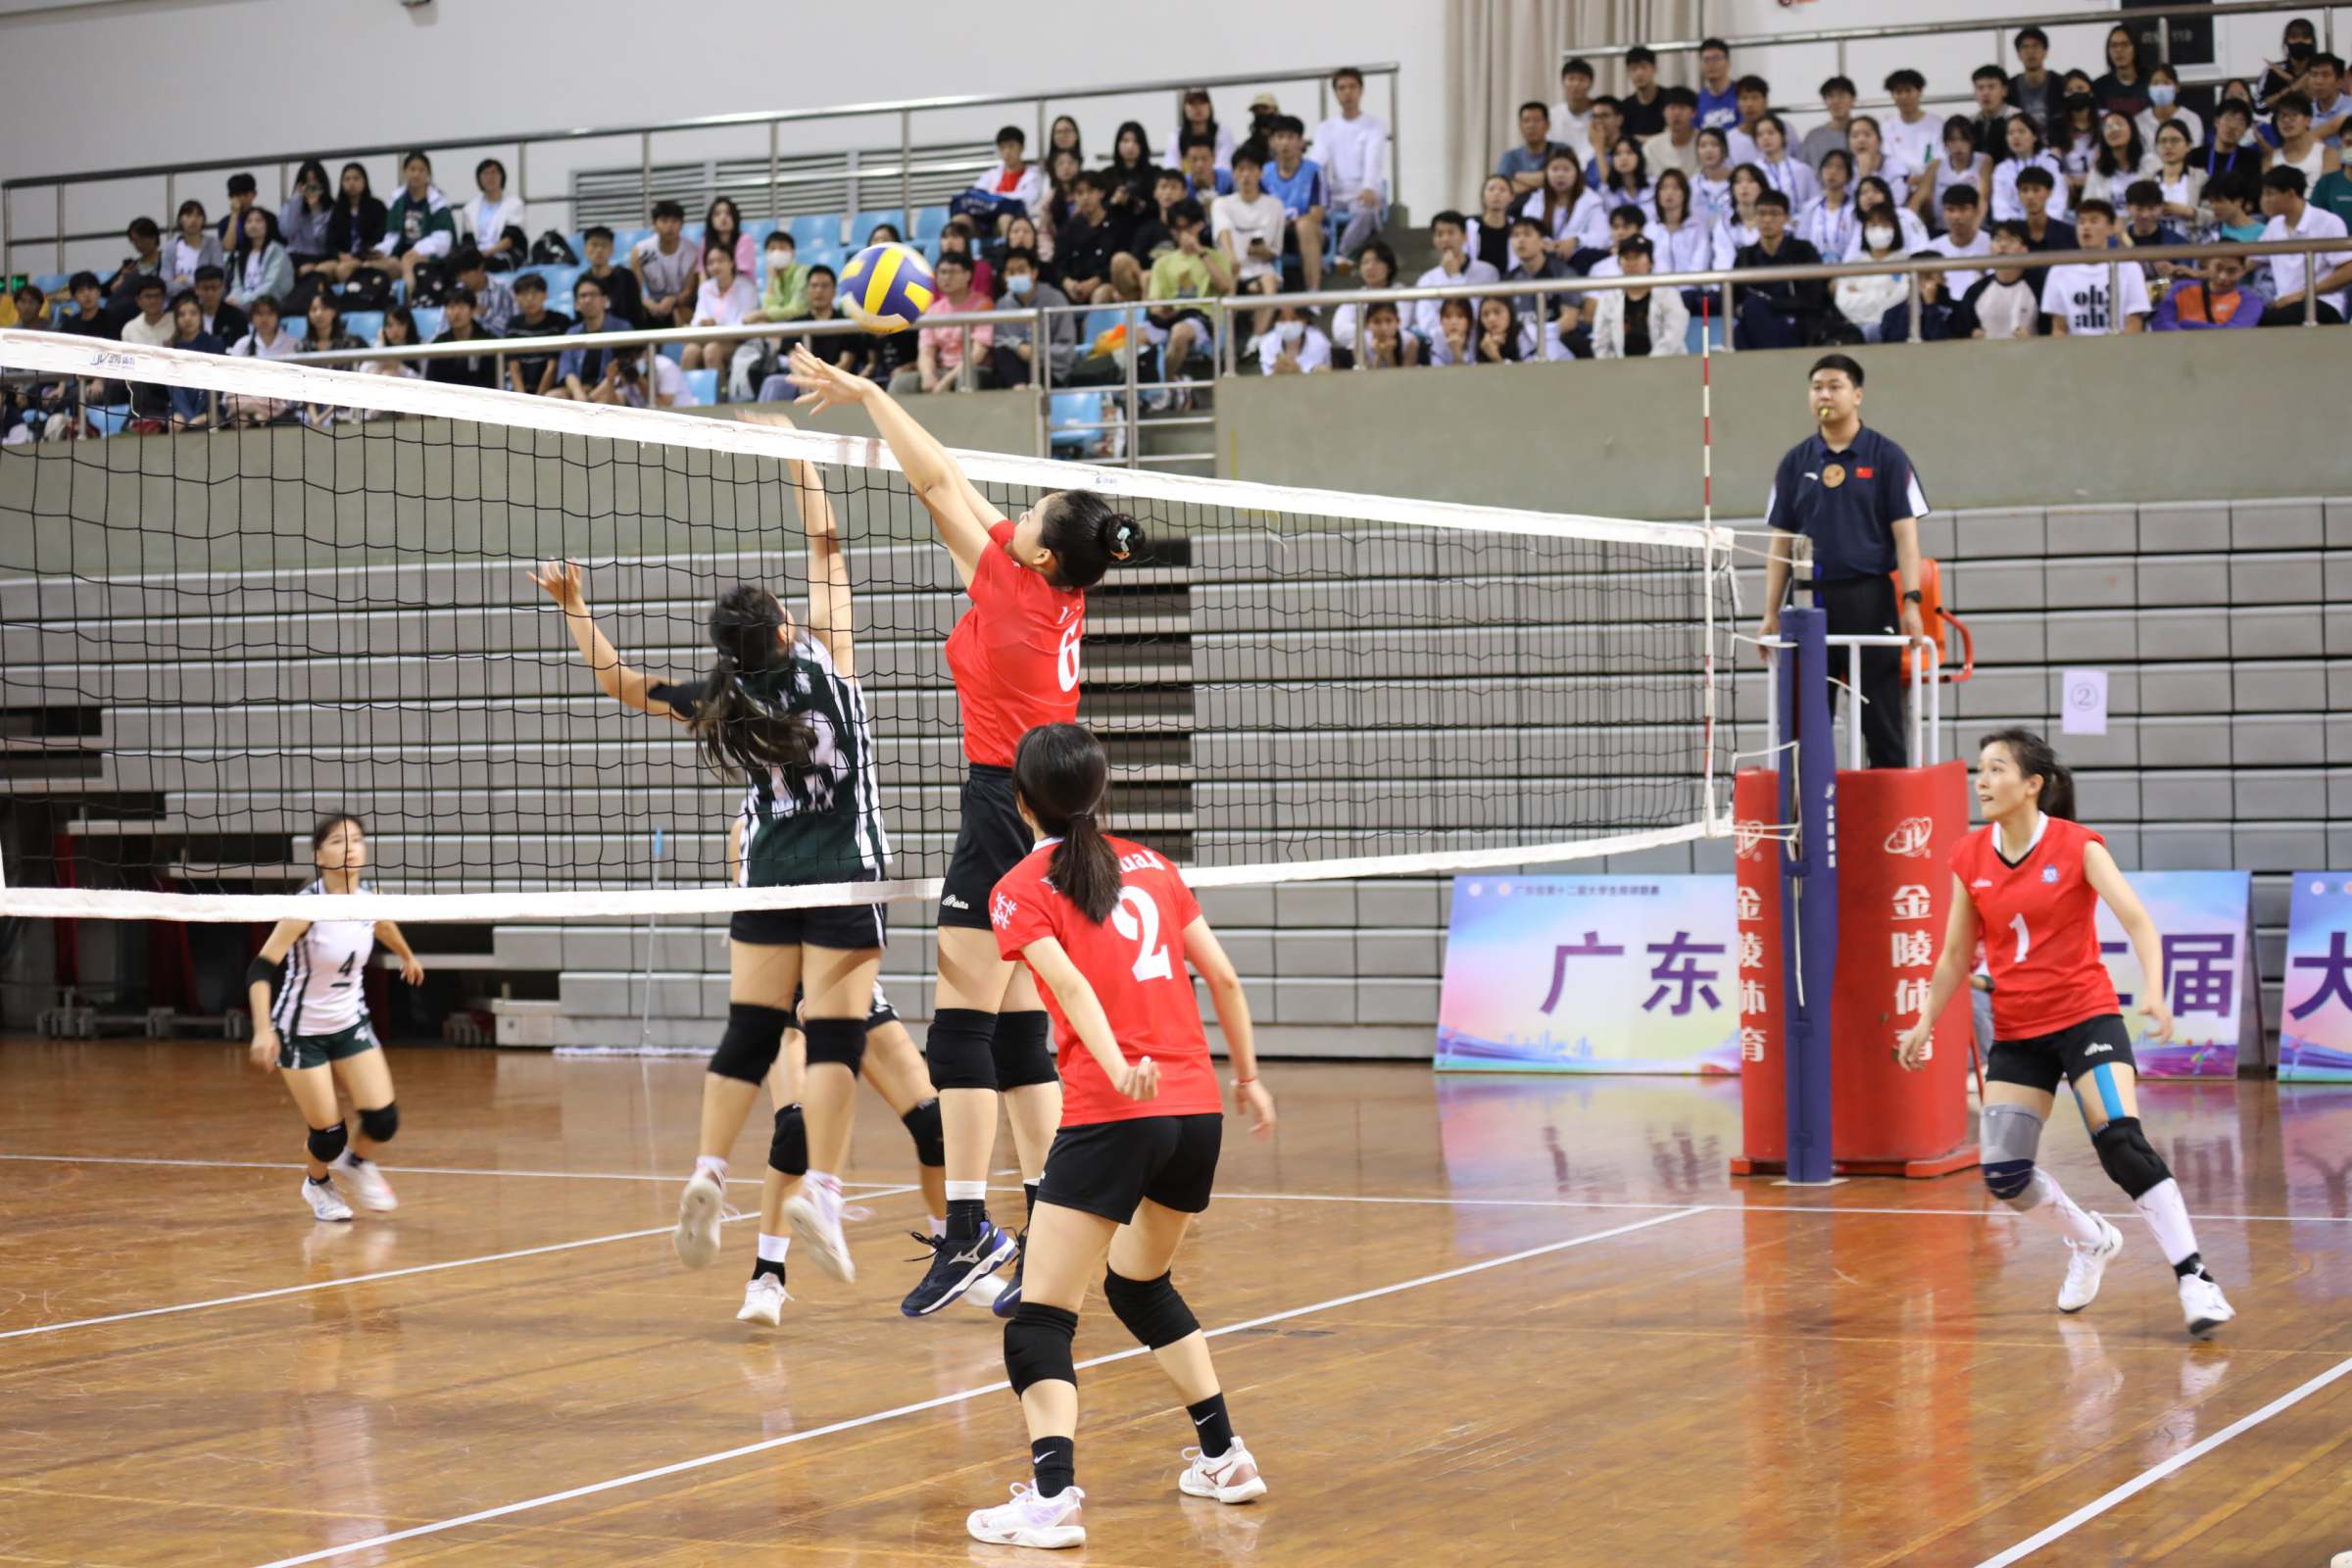 我校女子甲组排球队勇夺广东省第十二届大学生排球联赛冠军